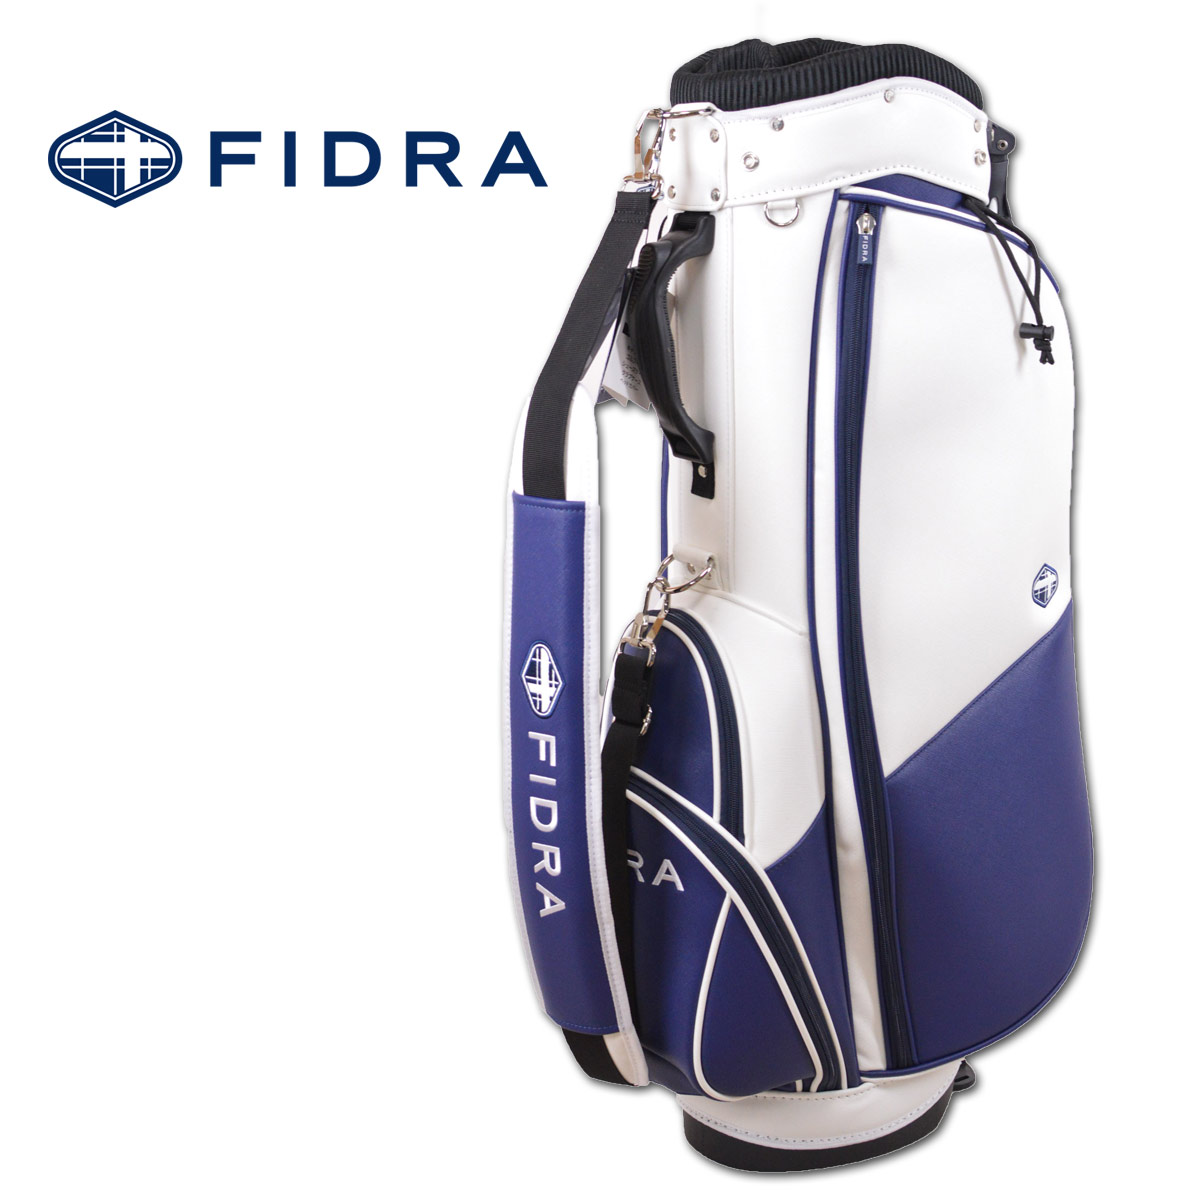 フィドラ キャディバッグ メンズ 紺 fd5pnc17 FIDRA ゴルフ キャディバック ゴルフバッグ 9.5インチ 9.5型 レア プレゼント ギフト golf 父の日